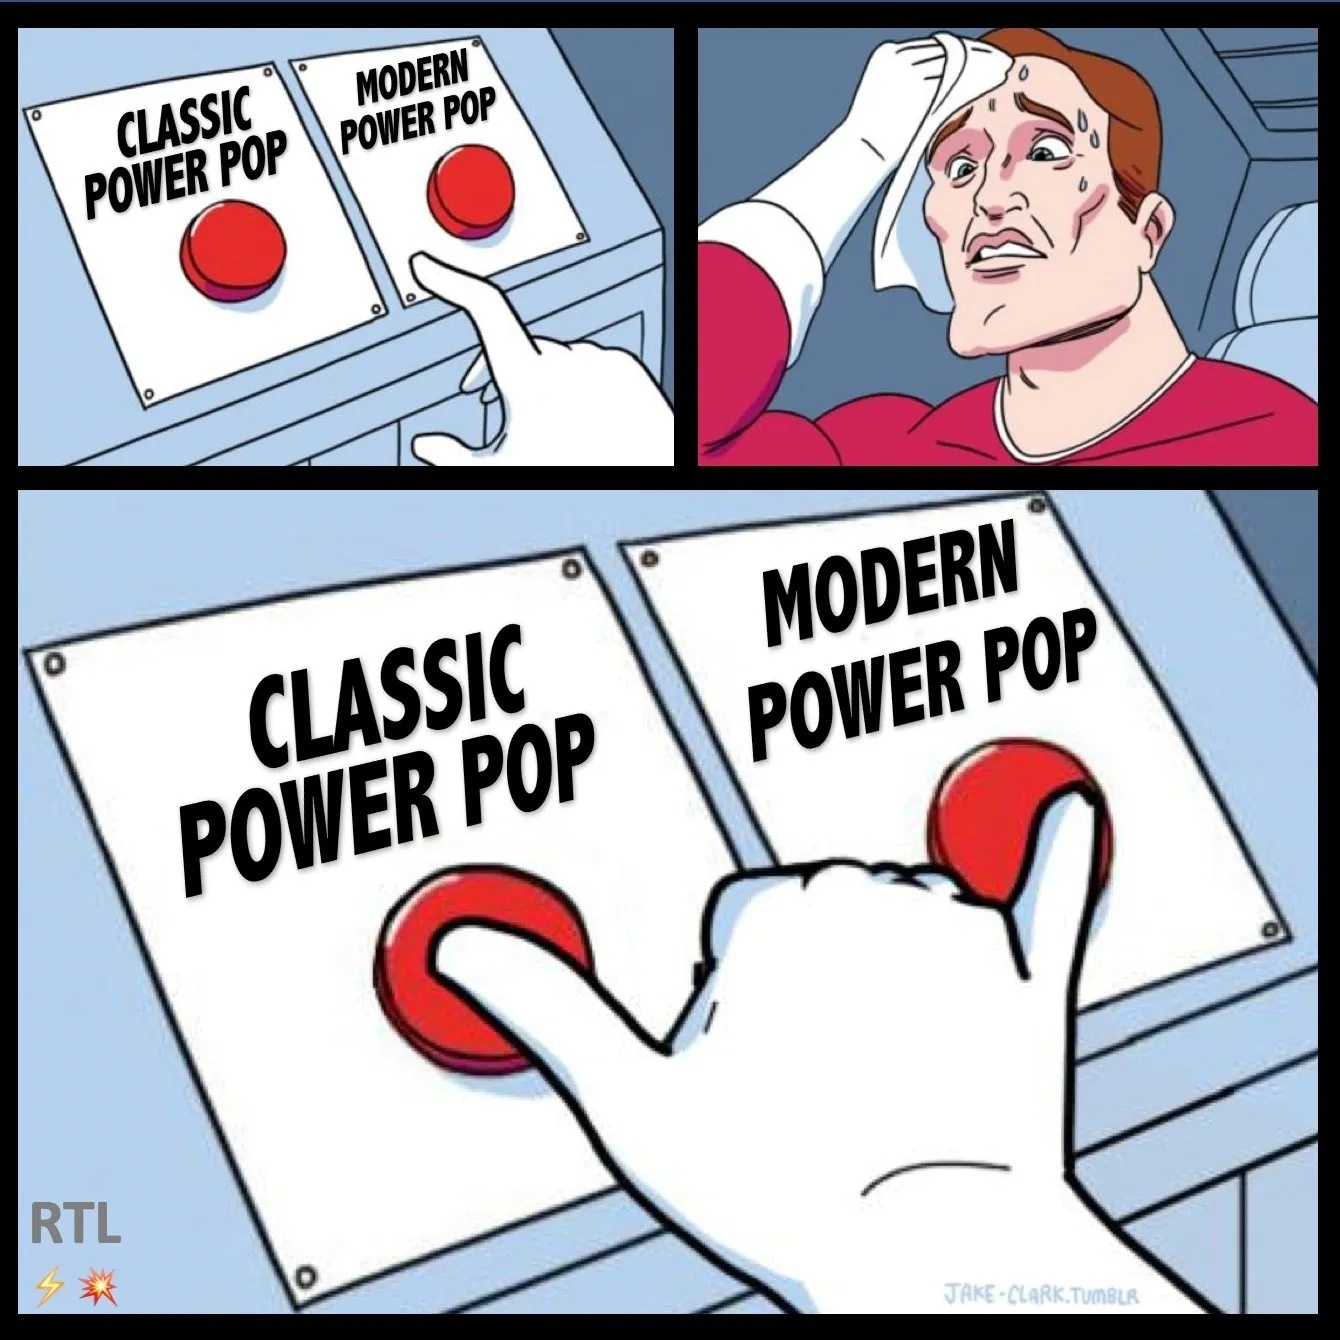 classic_power_pop_modern_power_pop6getk.jpeg